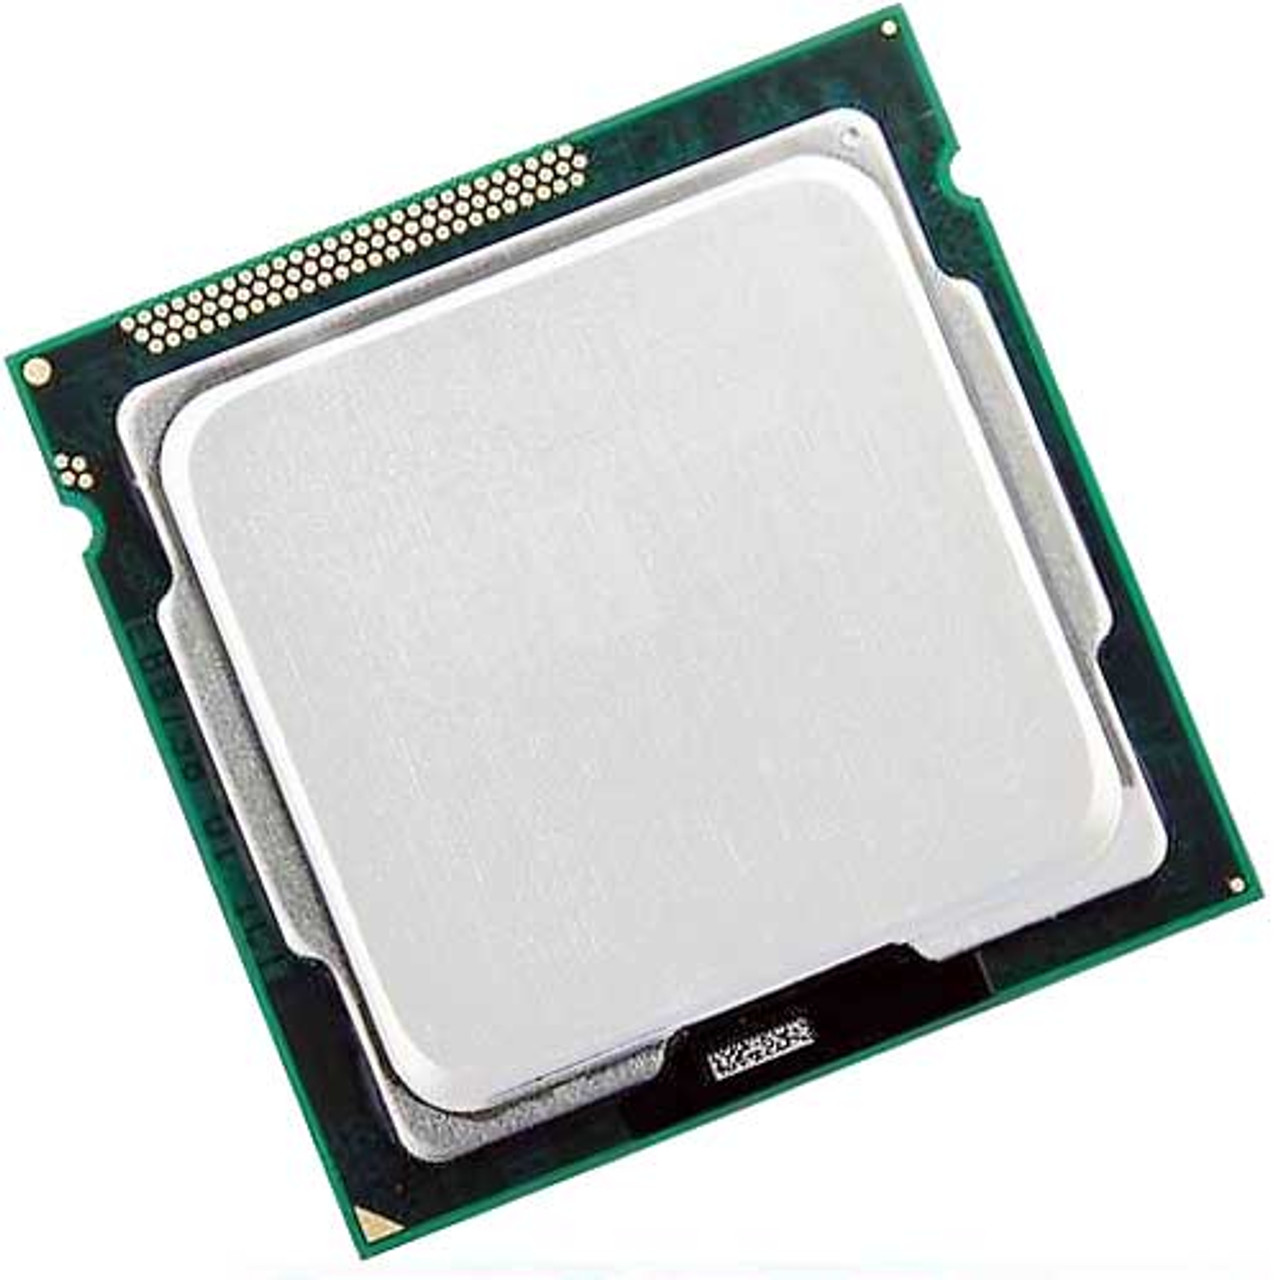 Intel Celeron D 336 2.80GHz Processor BX80547RE2800CN UPC 735858176354 - BX80547RE2800CN